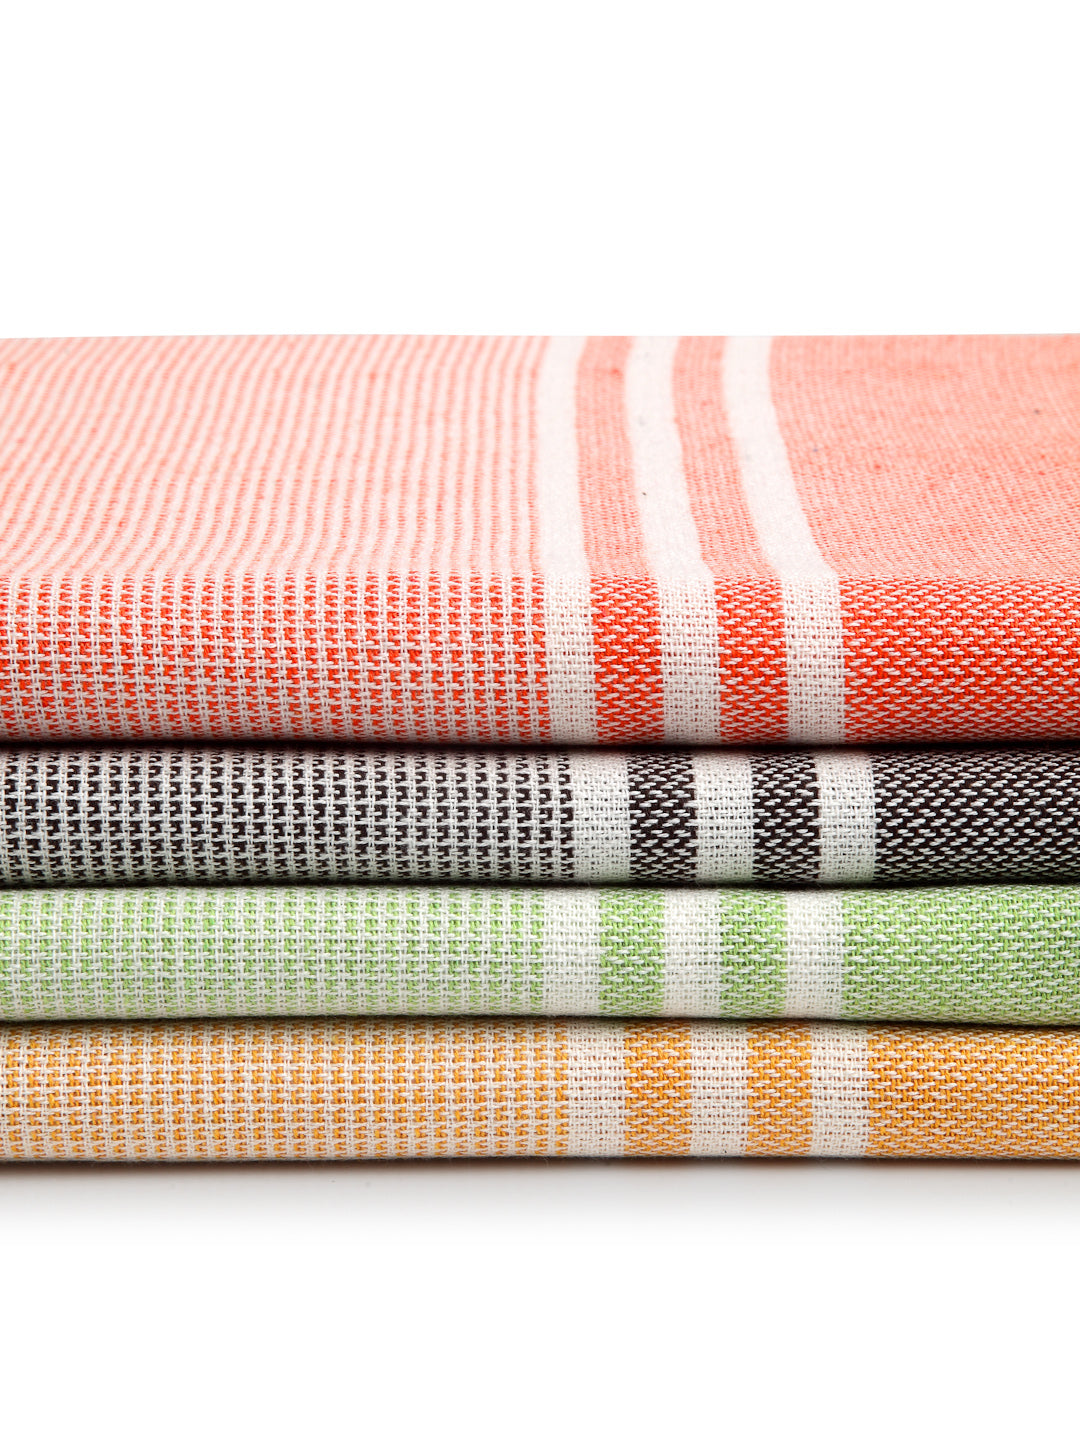 Arrabi Multi Stripes Handwoven Cotton Bath Towel (Set of 4) (150 x 75 cm)